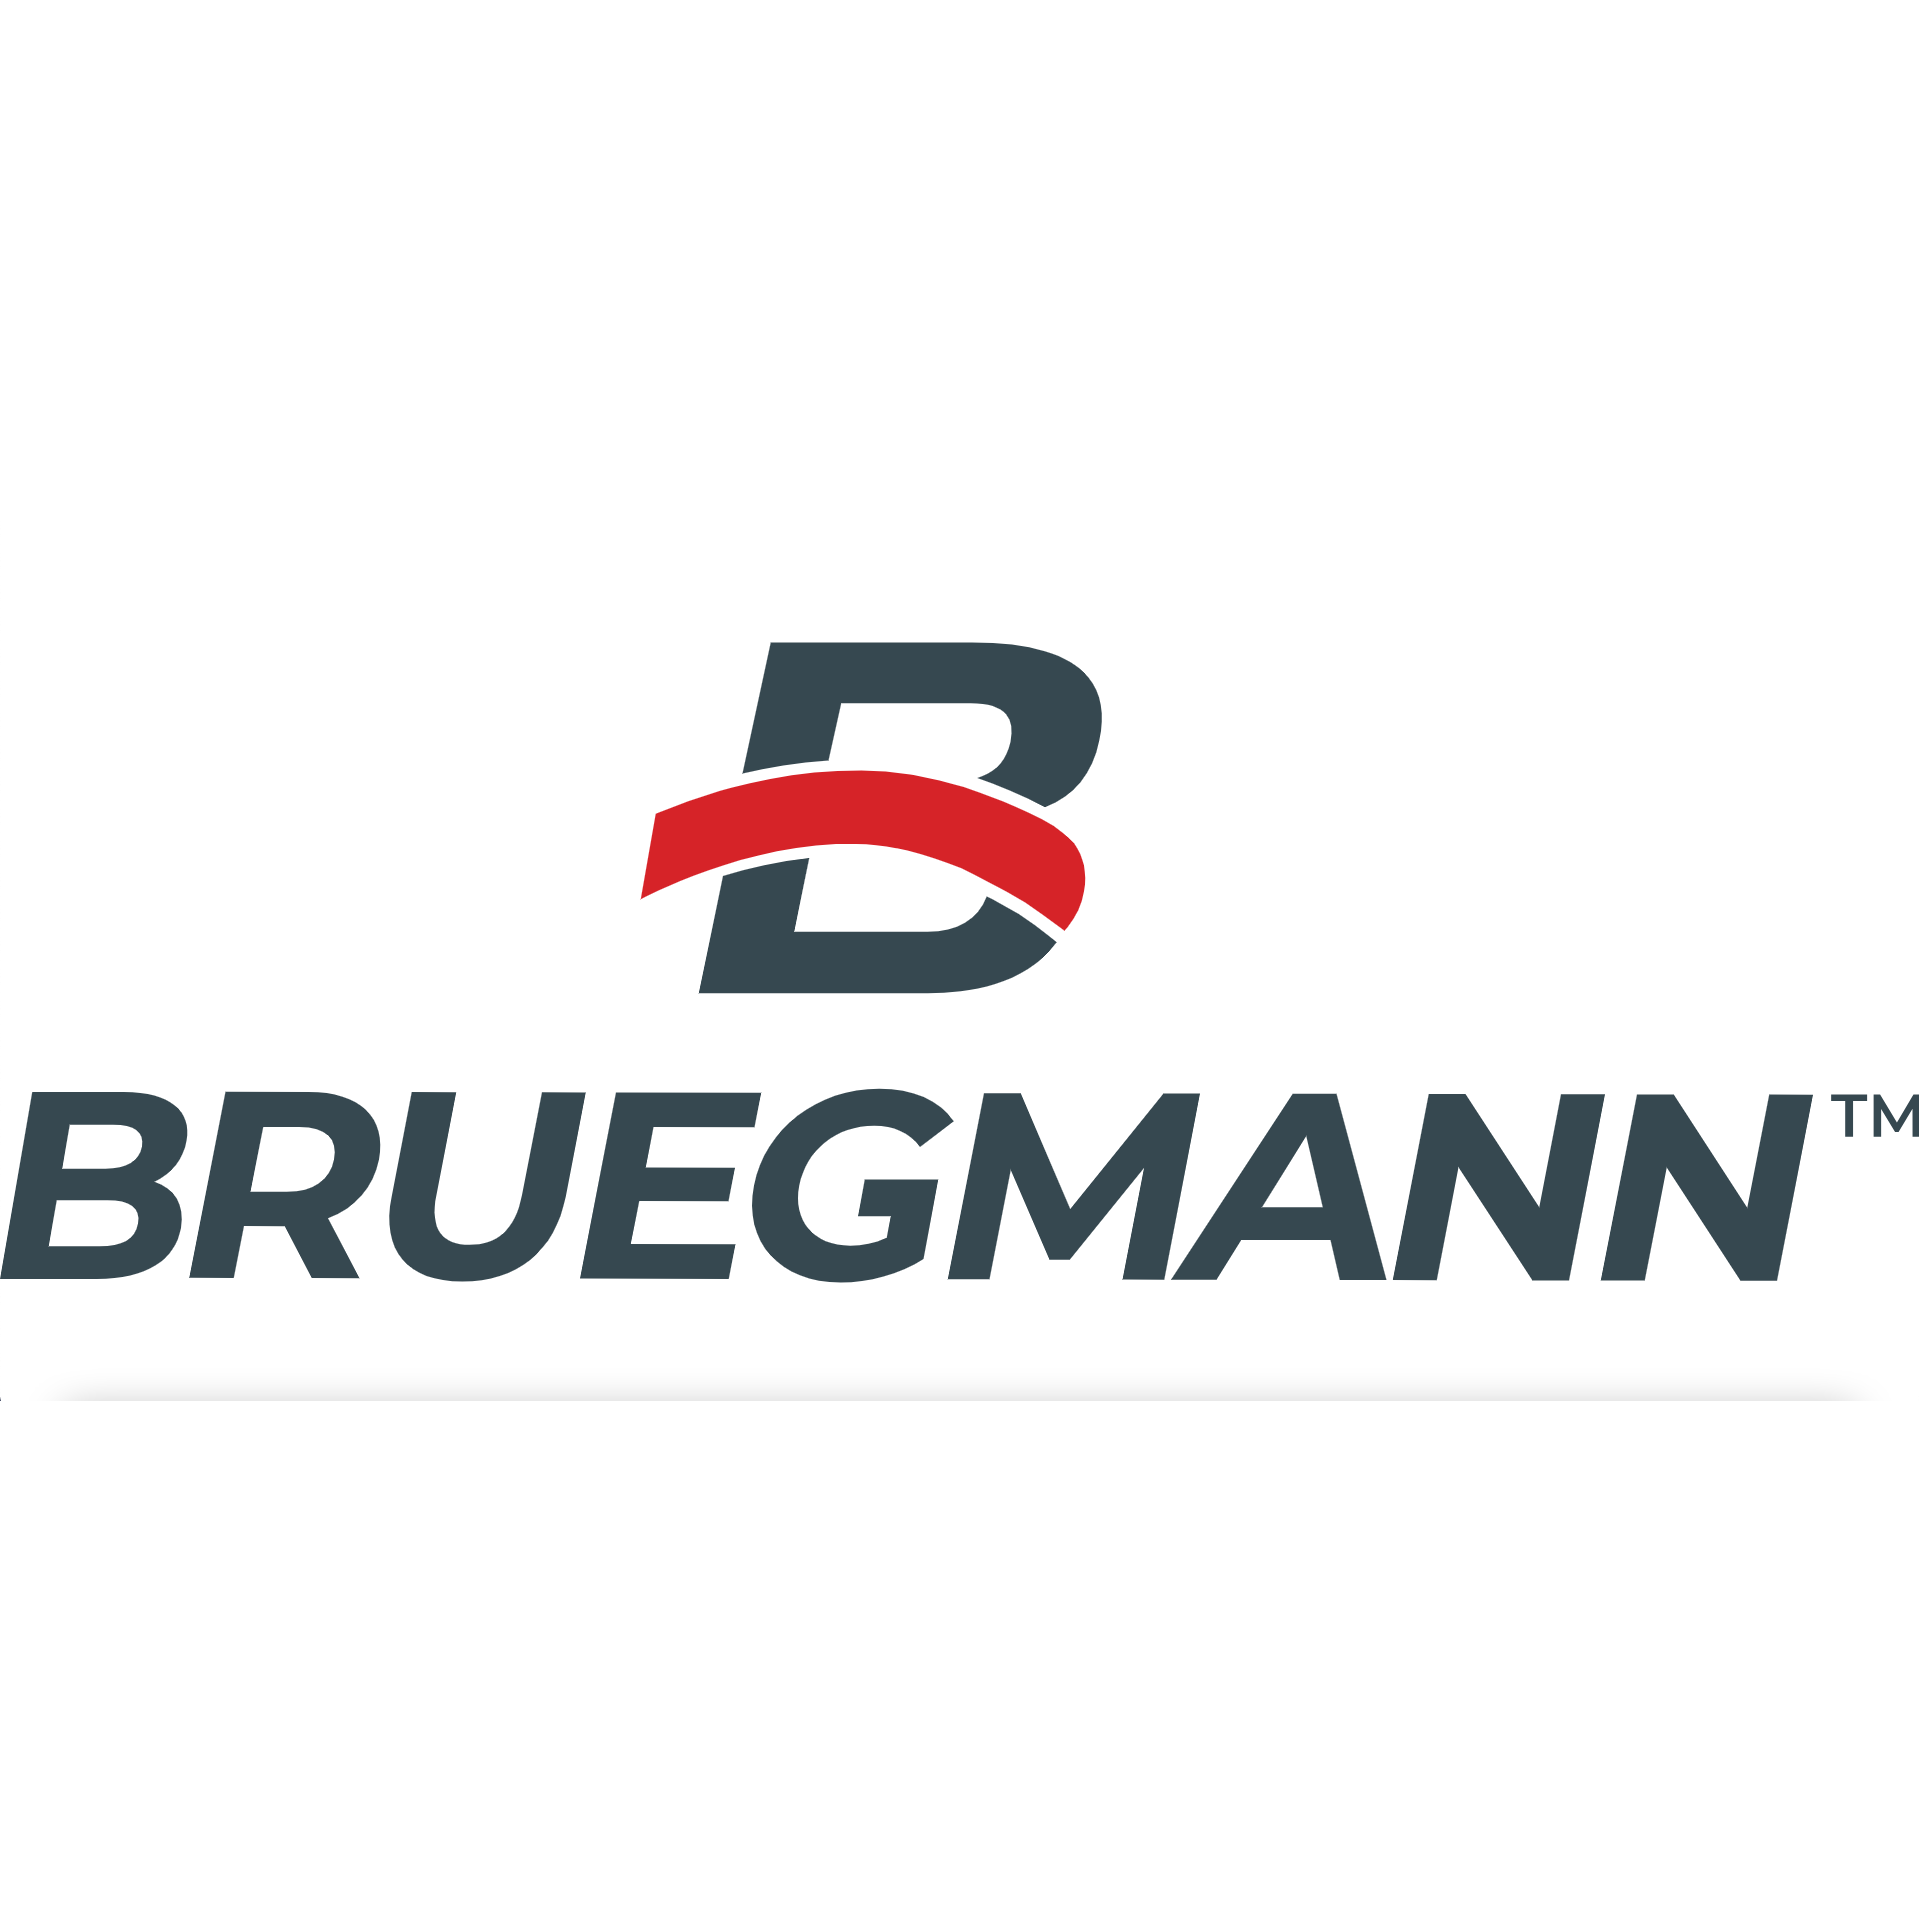 Bruegmann GmbH & Co. KG in Hagen in Westfalen - Logo